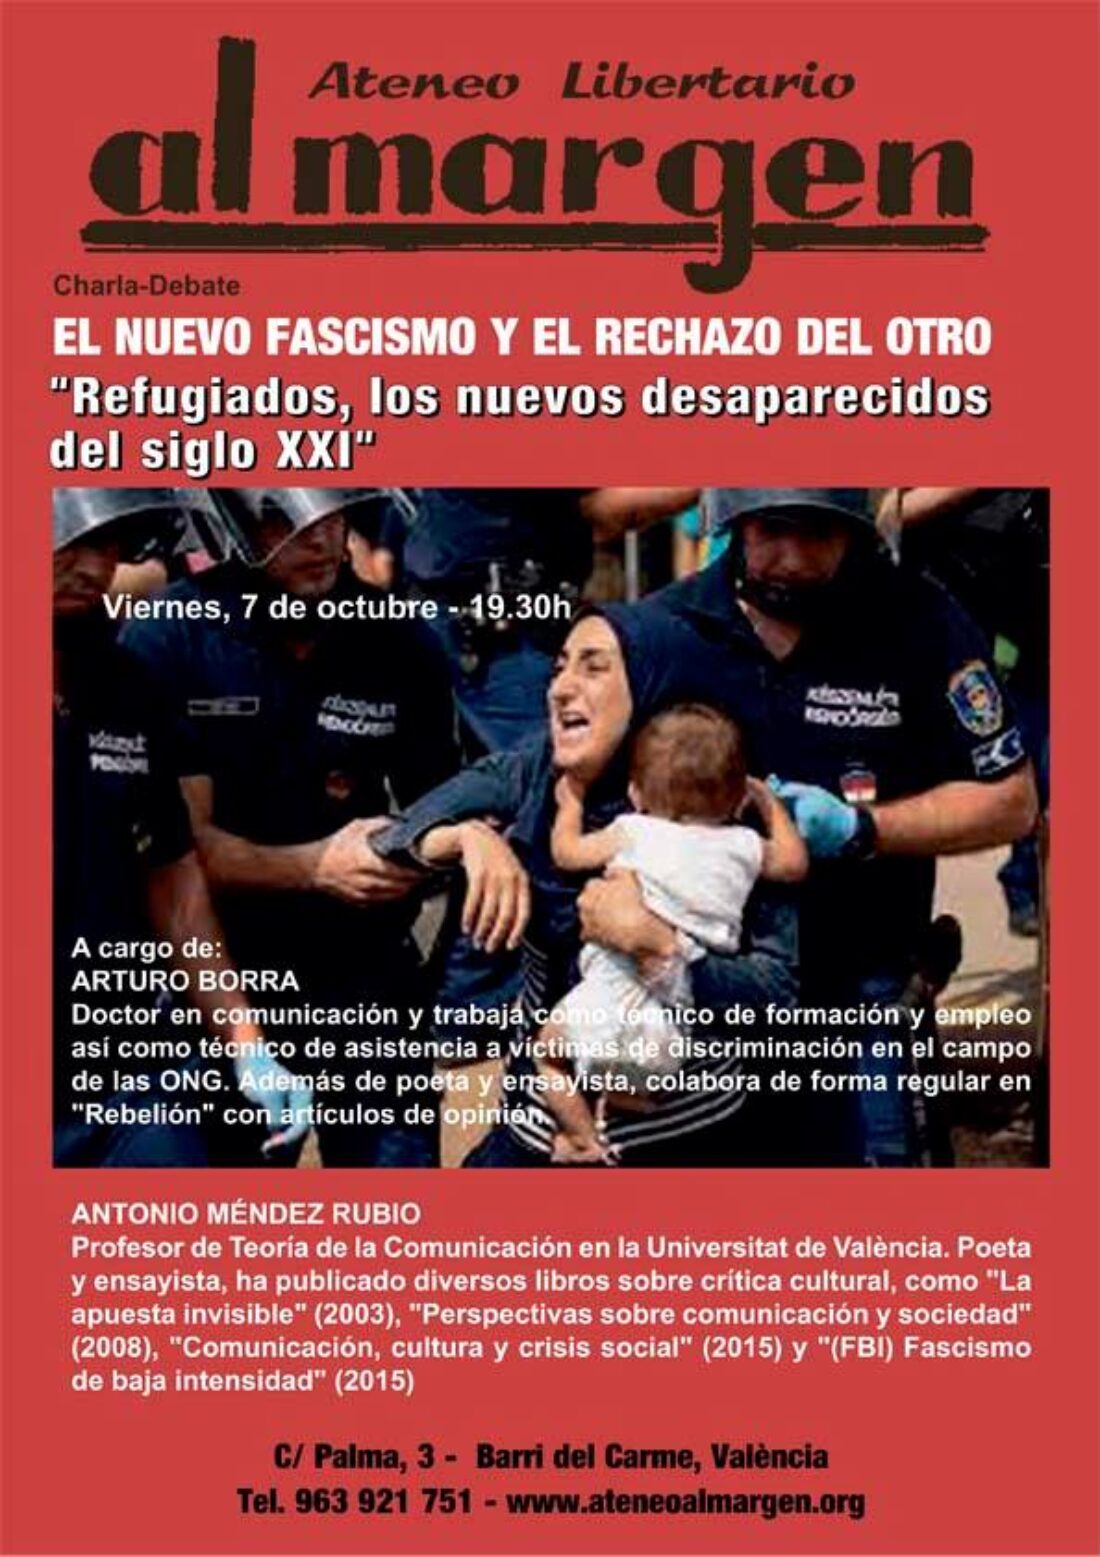 7-o Valencia: Charla “El nuevo fascismo y el rechazo del otro” en el Ateneo Libertario Al Margen